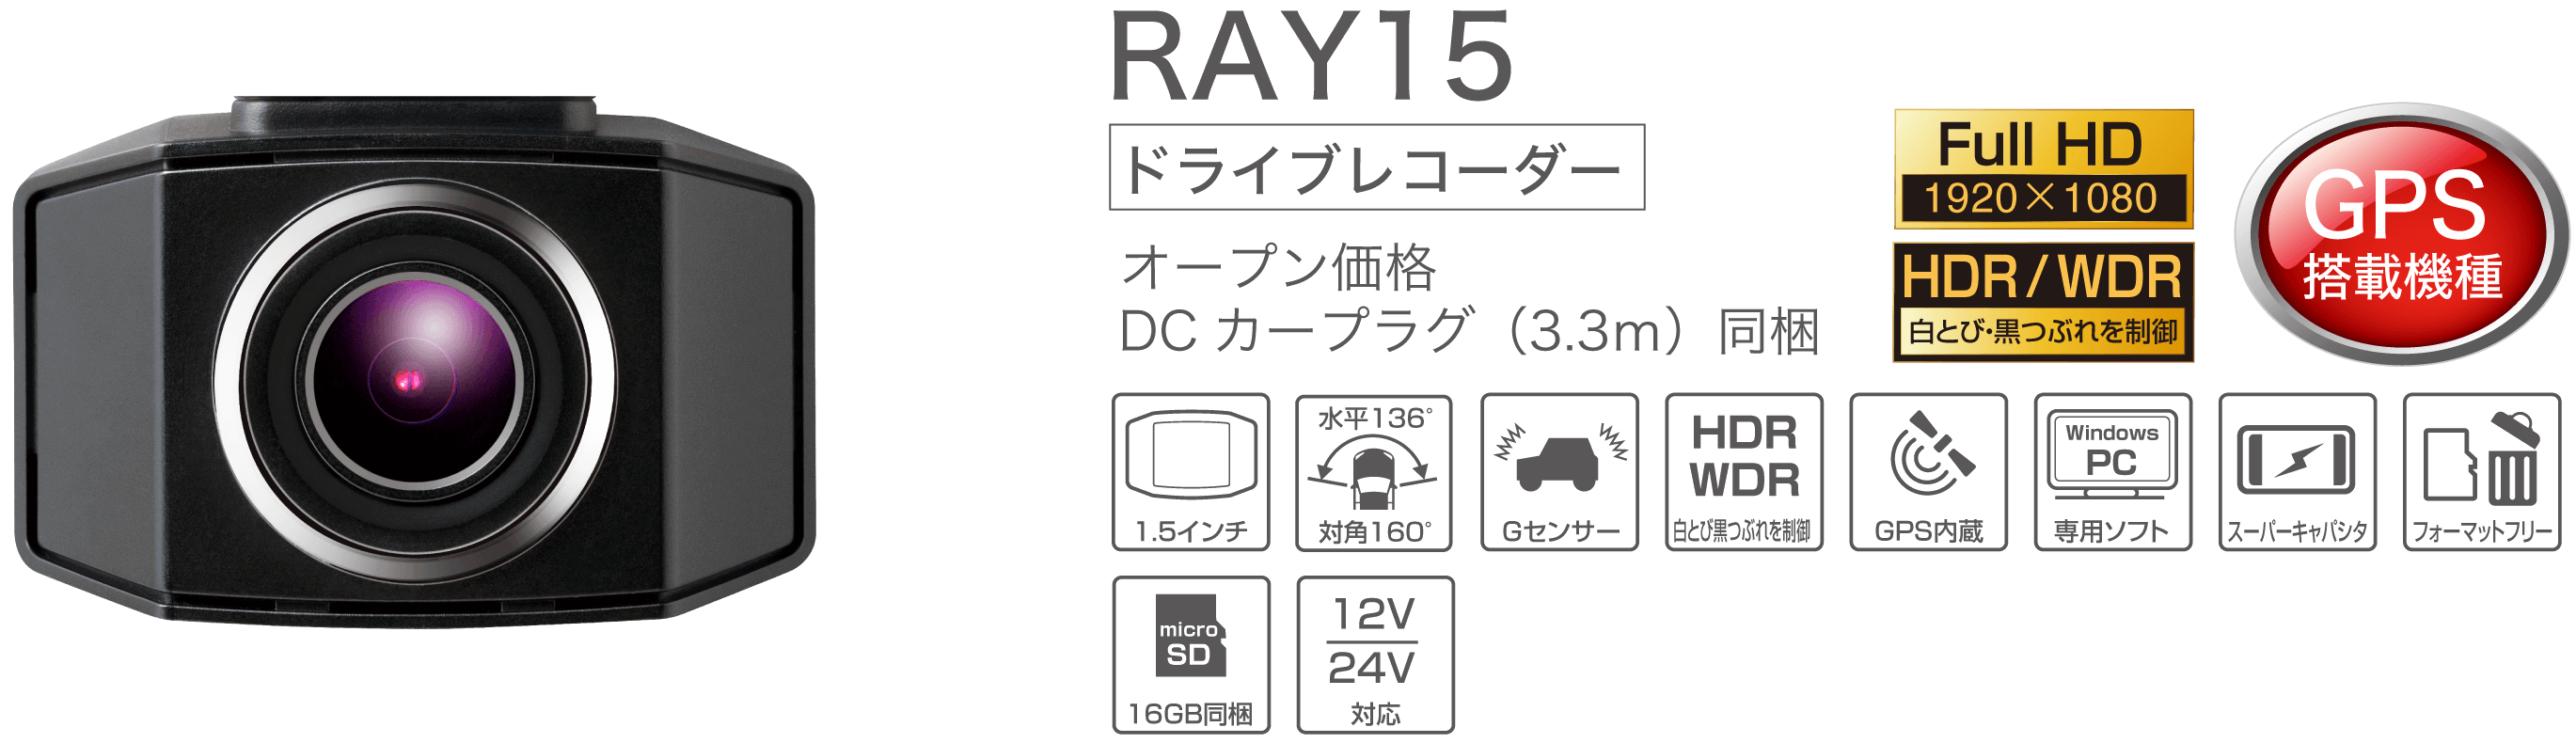 Ray15 製品の特徴 ドライブレコーダー Pixyda ピクシーダ